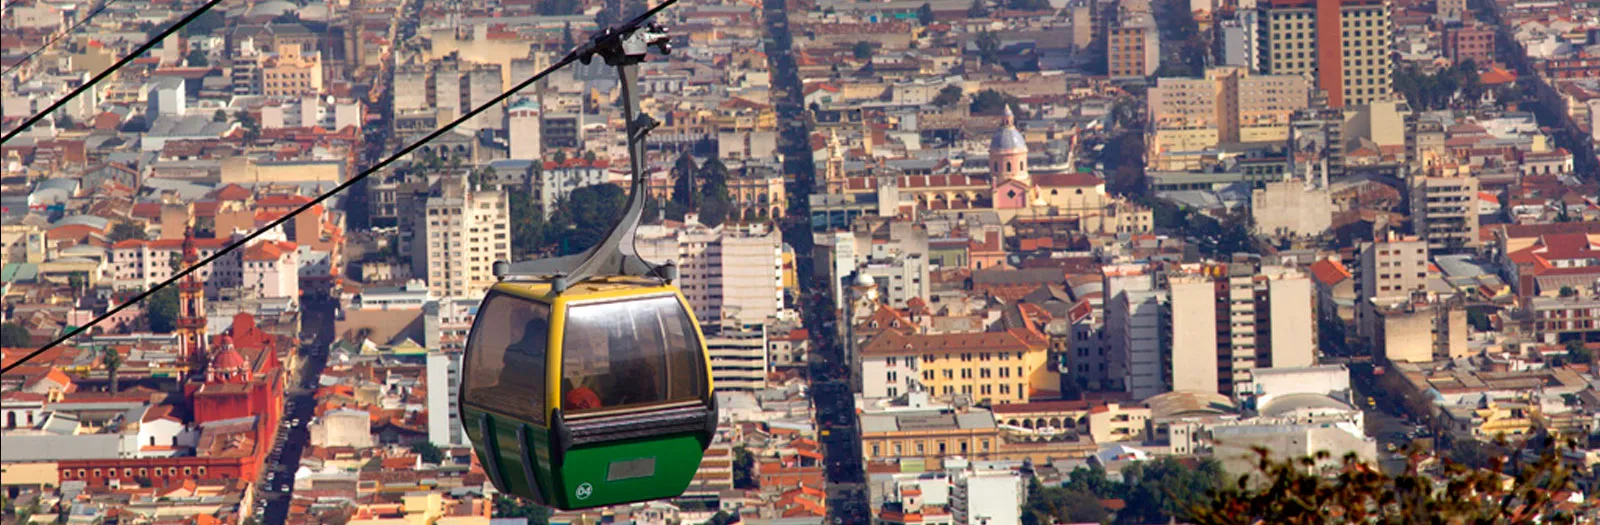 Teleférico, vista aérea del casco histórico, Salta. Por Eliseo Miciu (turismo.salta.gov.ar)